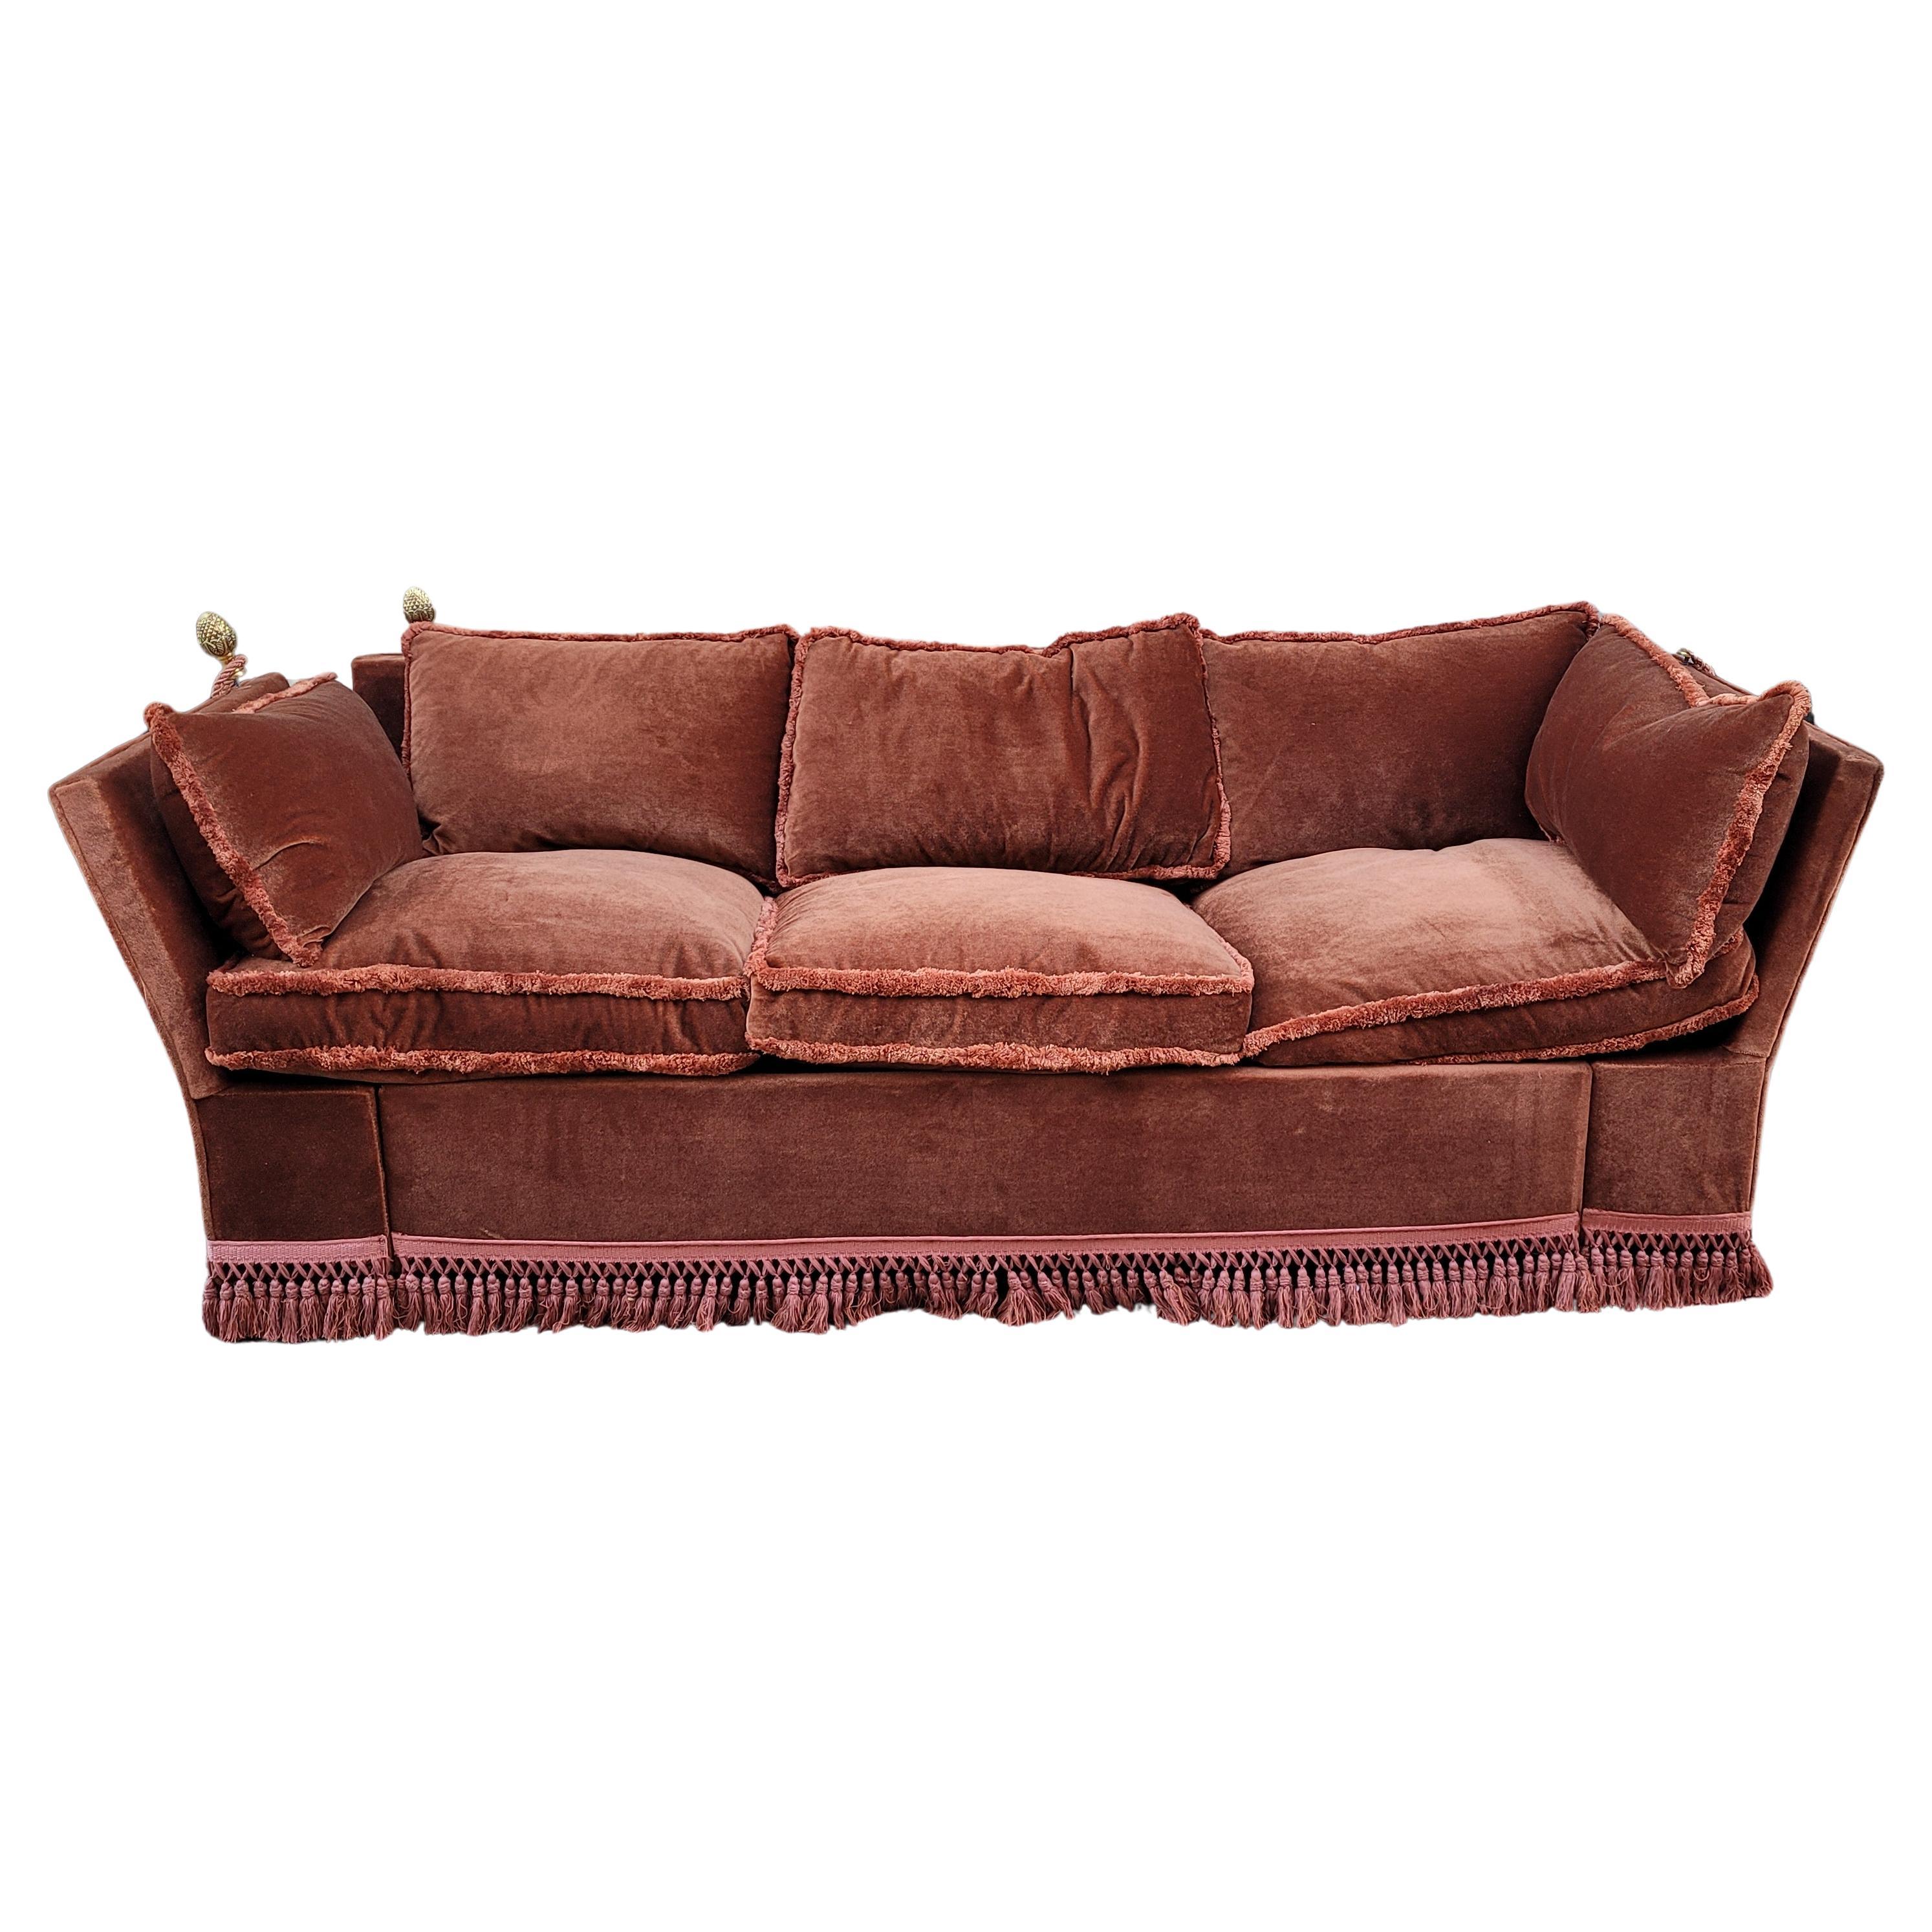 Italian Terracotta  Burgundy color velvet sofa bed, 70's - France